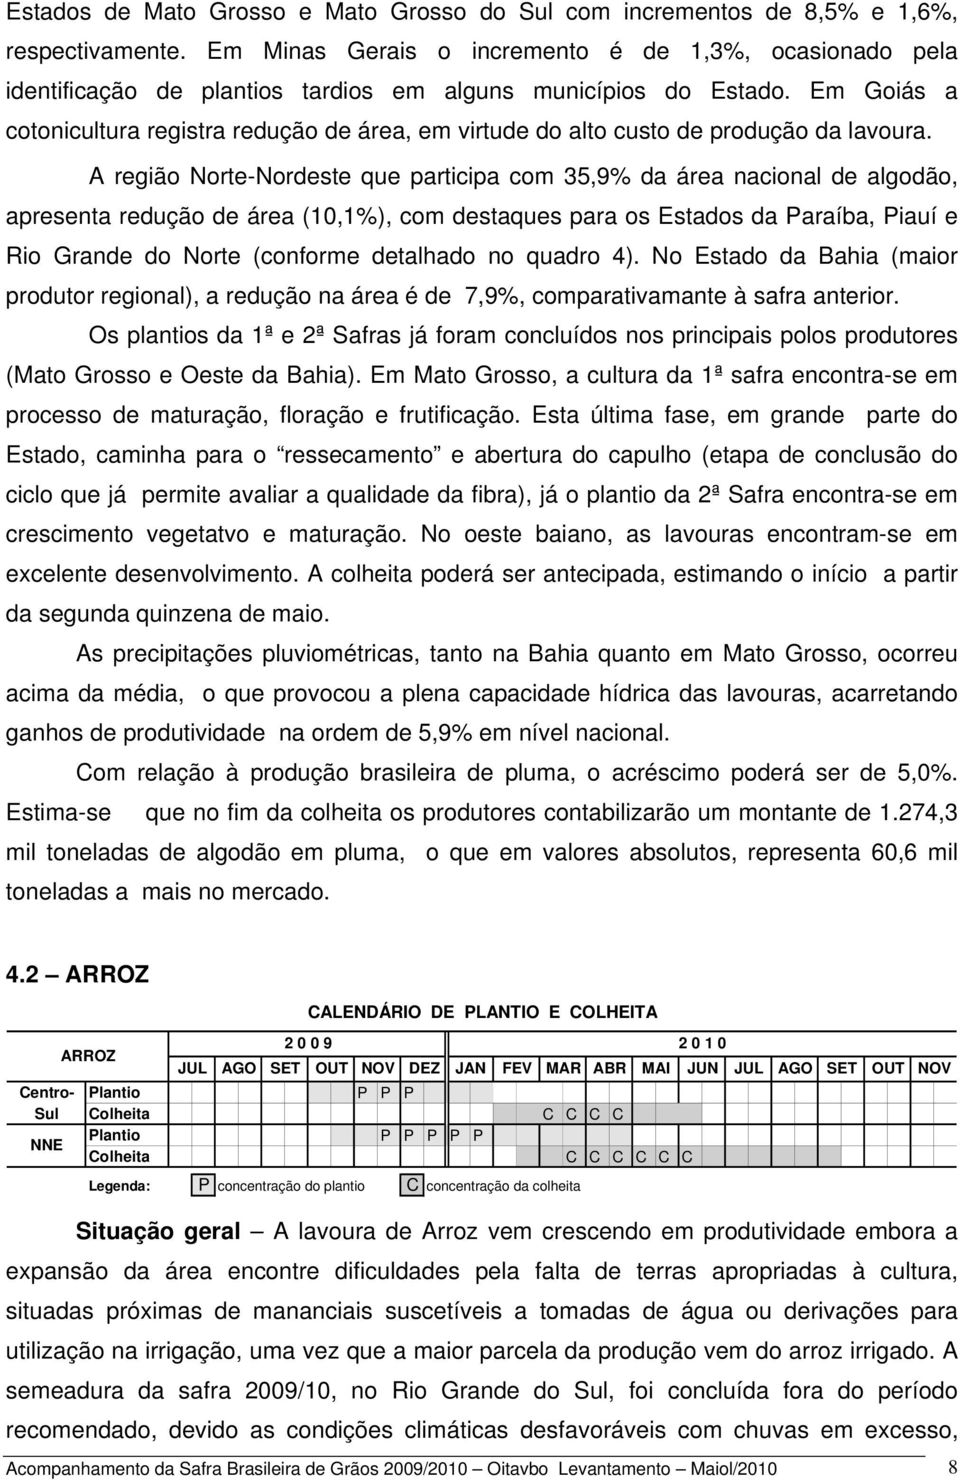 Em Goiás a cotonicultura registra redução de área, em virtude do alto custo de produção da lavoura.